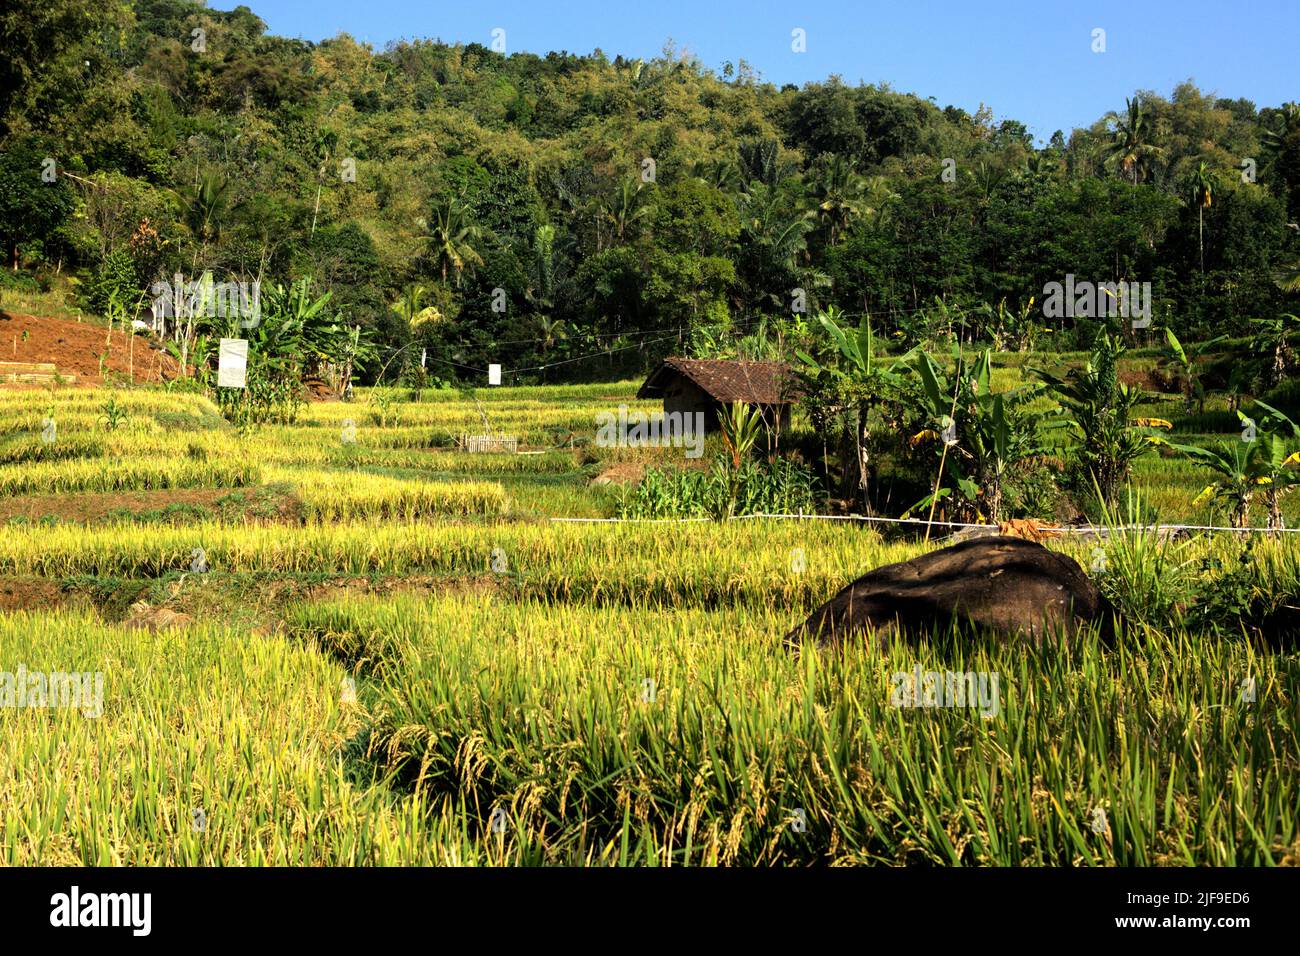 Paesaggio di terrazze di riso a Sumedang, Giava occidentale, Indonesia. La coltivazione del risone è un'importante fonte di emissioni ed è in aumento, su cui l'Asia è identificata come responsabile del 89% delle emissioni globali della coltivazione del riso, secondo quanto affermato dal gruppo intergovernativo sui cambiamenti climatici (IPCC) nella relazione del 2022. Foto Stock